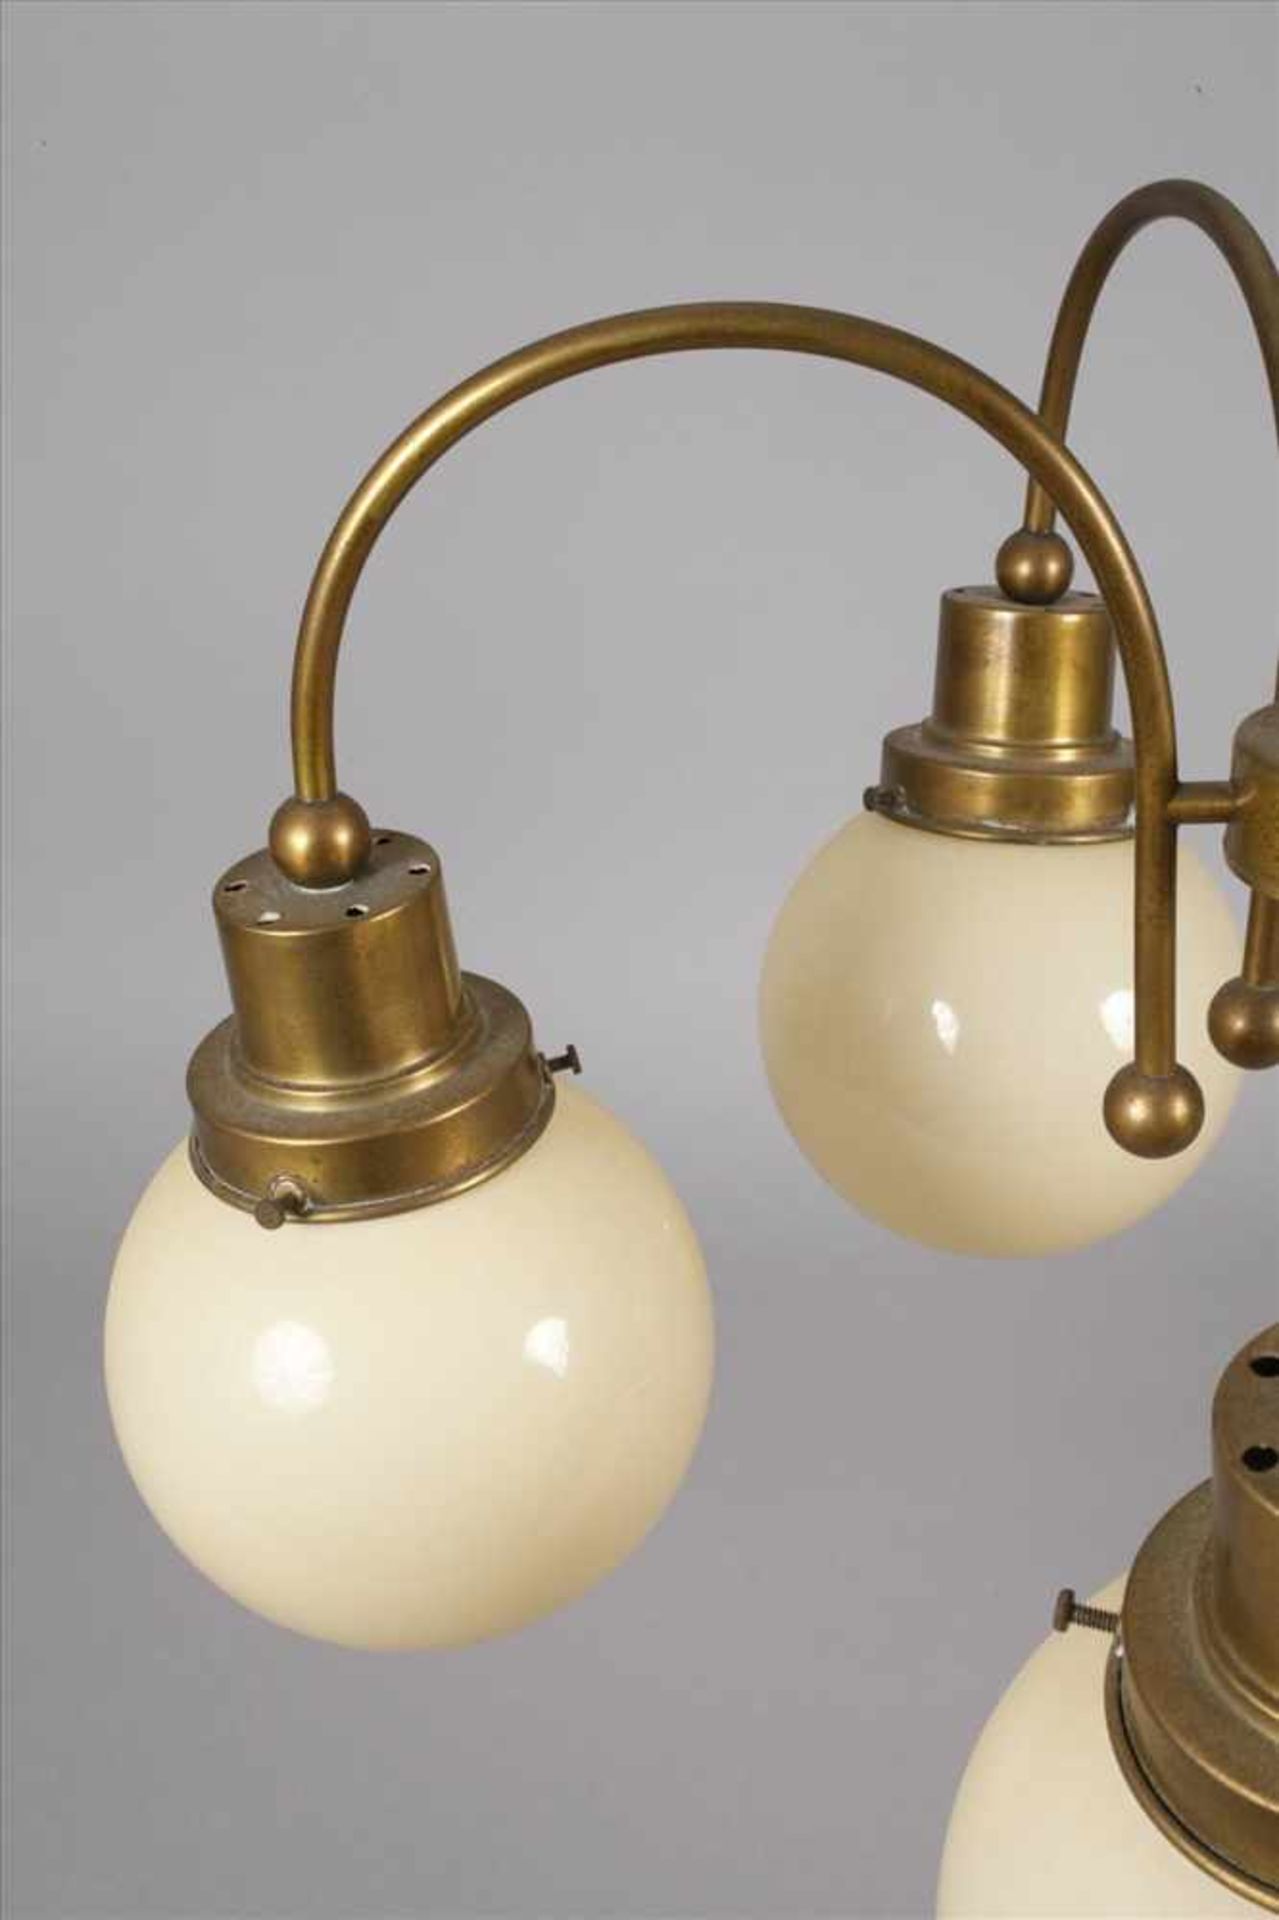 Deckenlampe Art découm 1930, Messinggestänge in stilisierter Balusterform, mit sechs c-förmig - Bild 2 aus 3